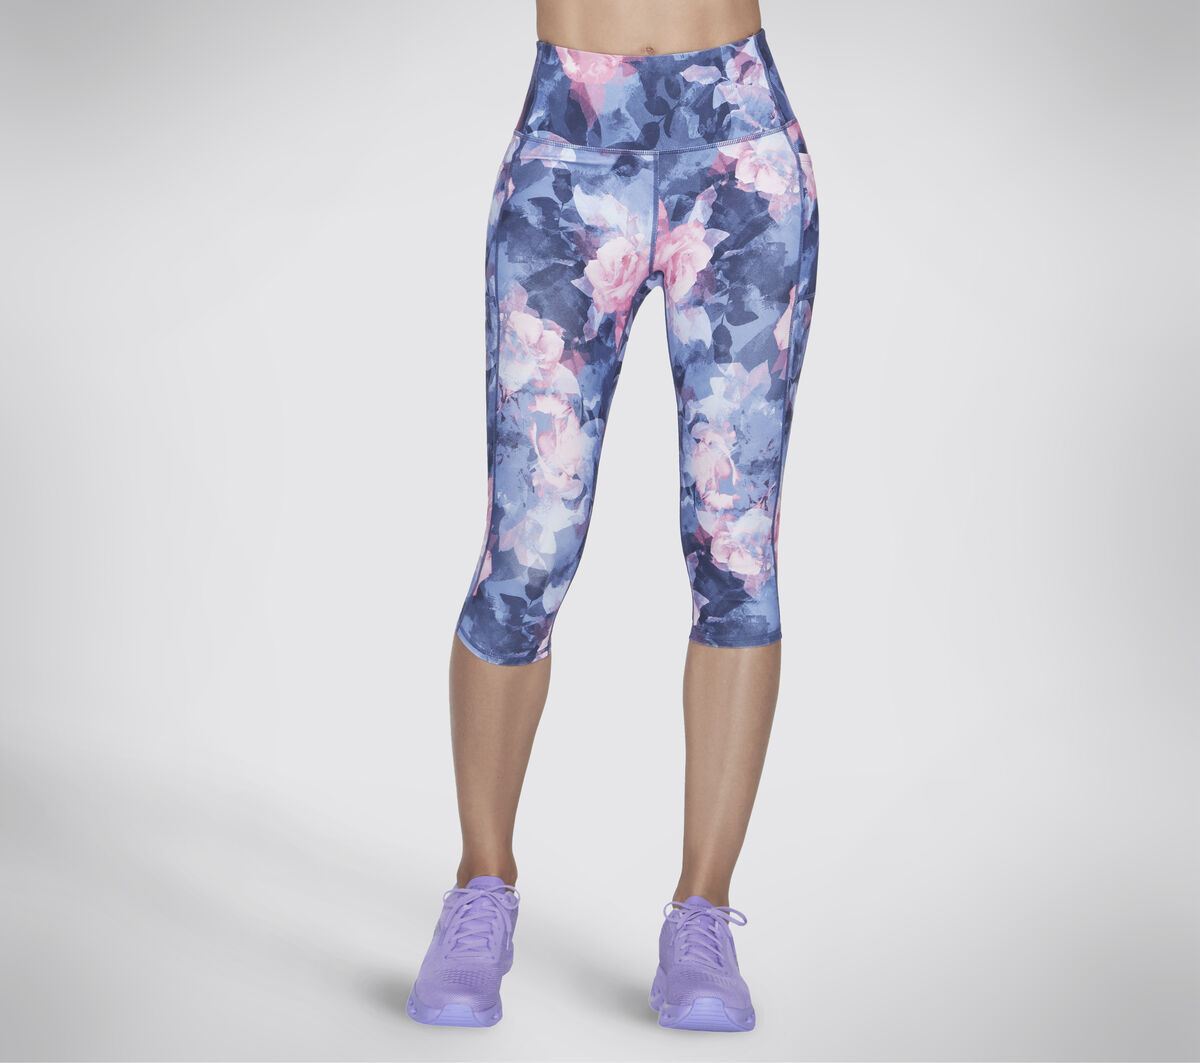 Skechers Women's High Waist Stretch Pants w/Pockets Purple